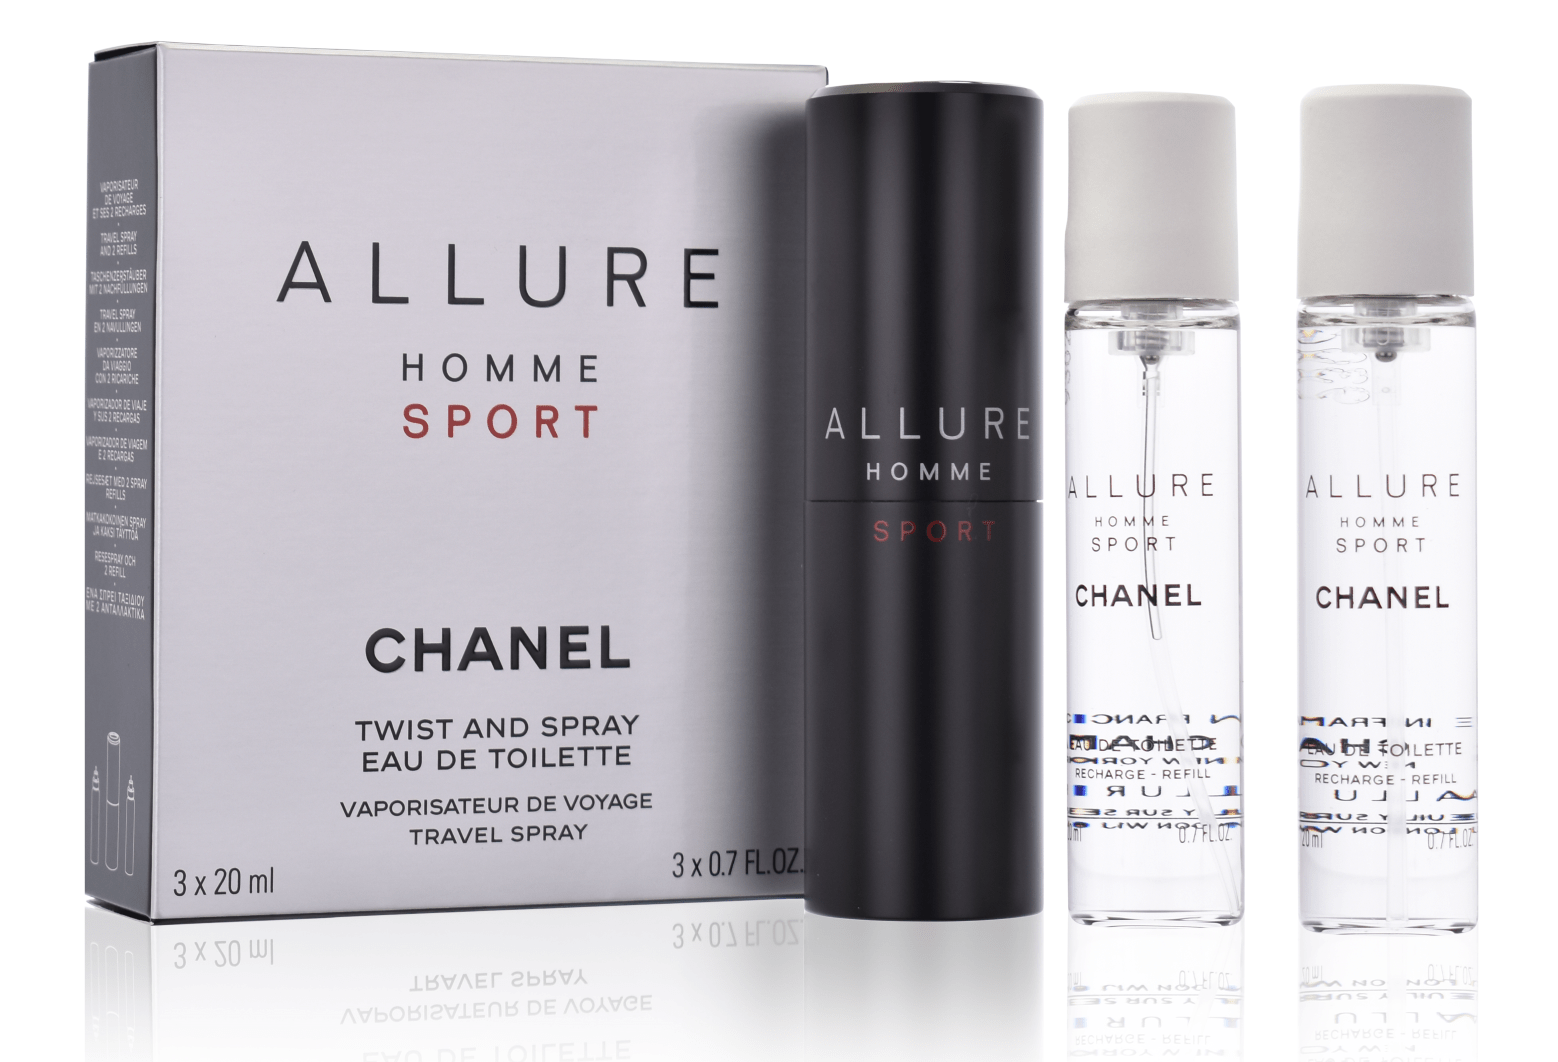 Chanel Allure Homme Sport 3 x 20 ml Eau de Toilette Vapo de Voyage